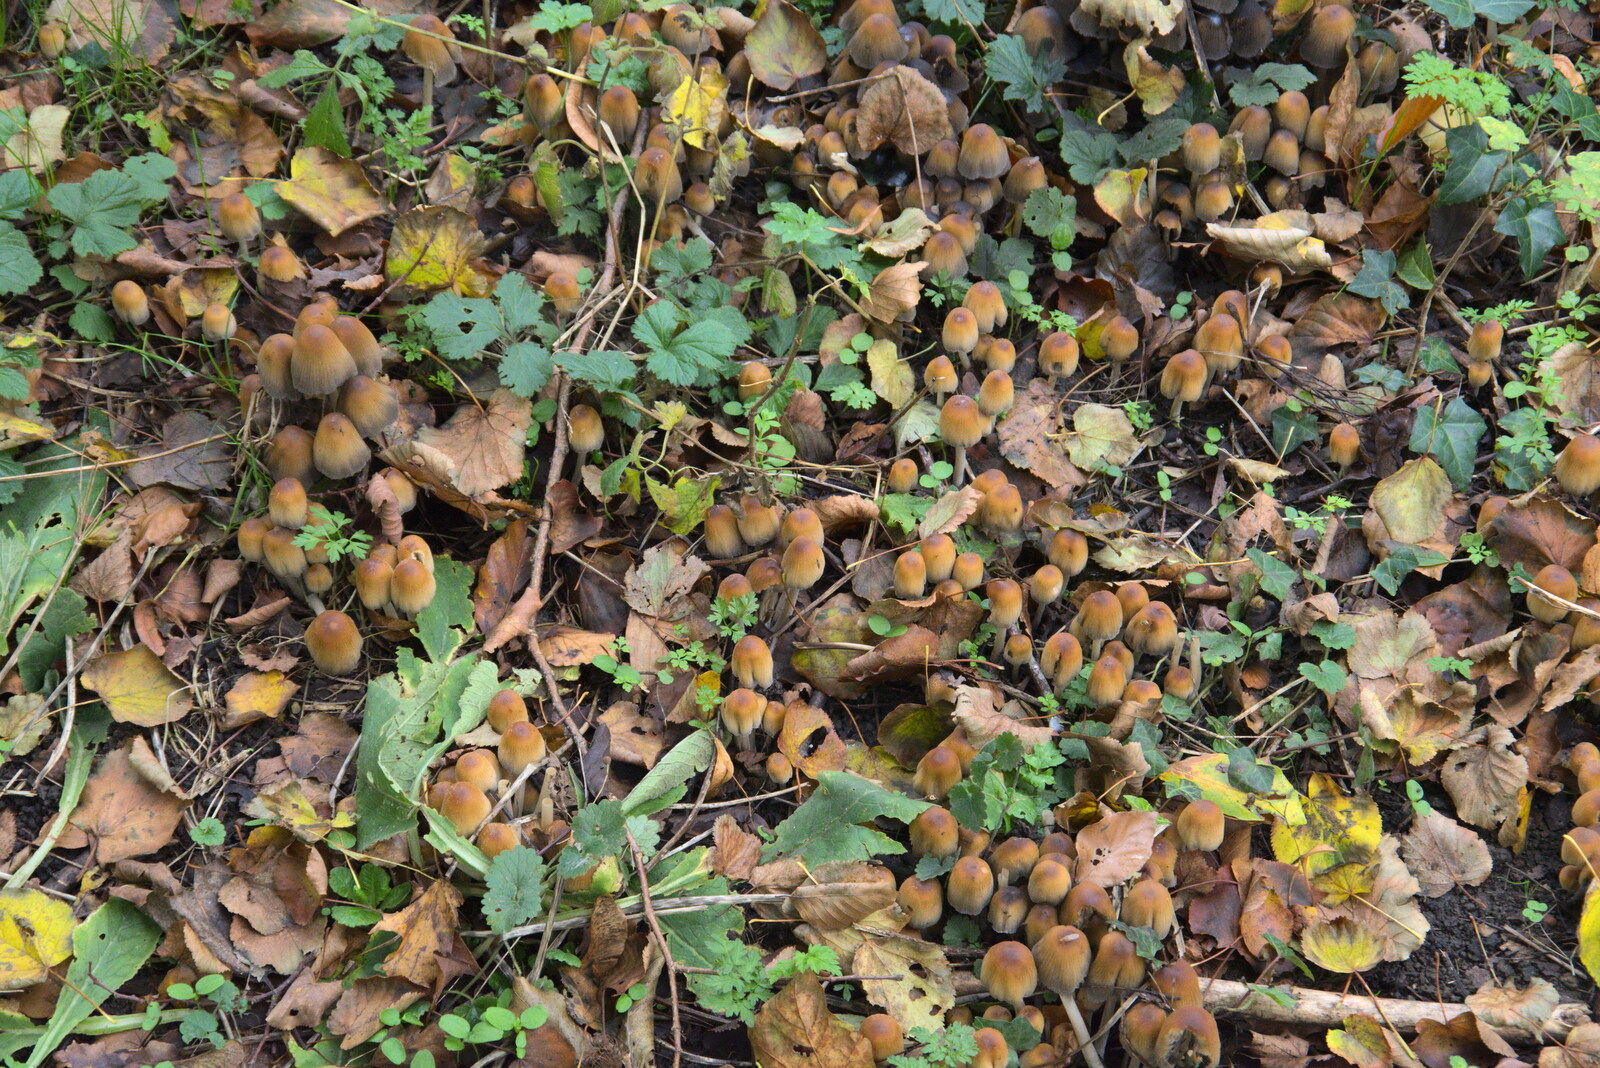 More mushrooms from A Walk Around Thornham Estate, Thornham Magna, Suffolk - 18th October 2020